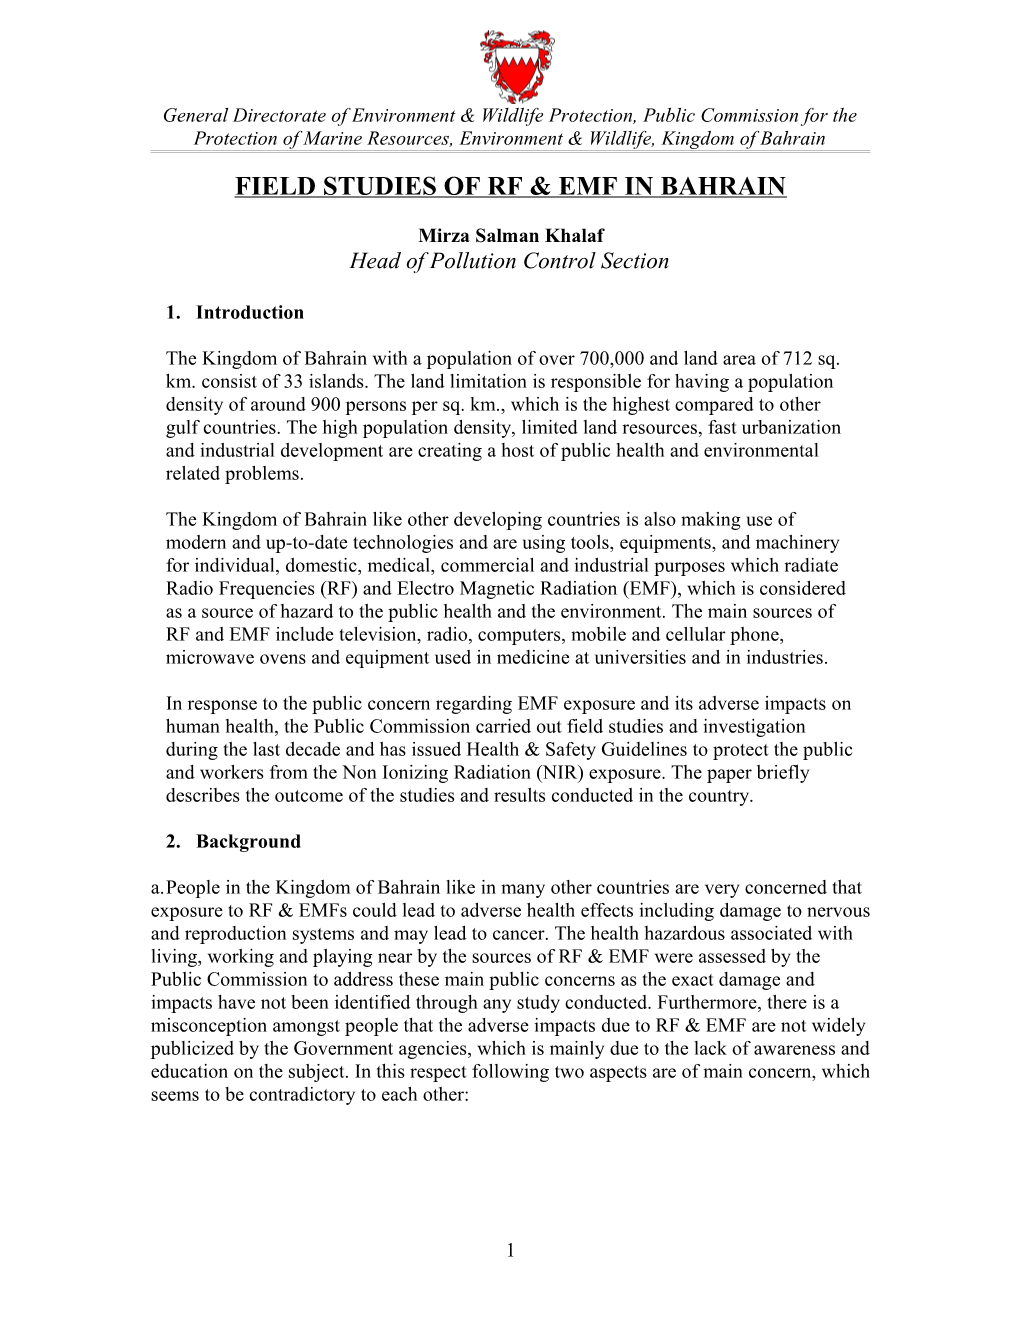 Field Studies of Rf & Emf in Bahrain